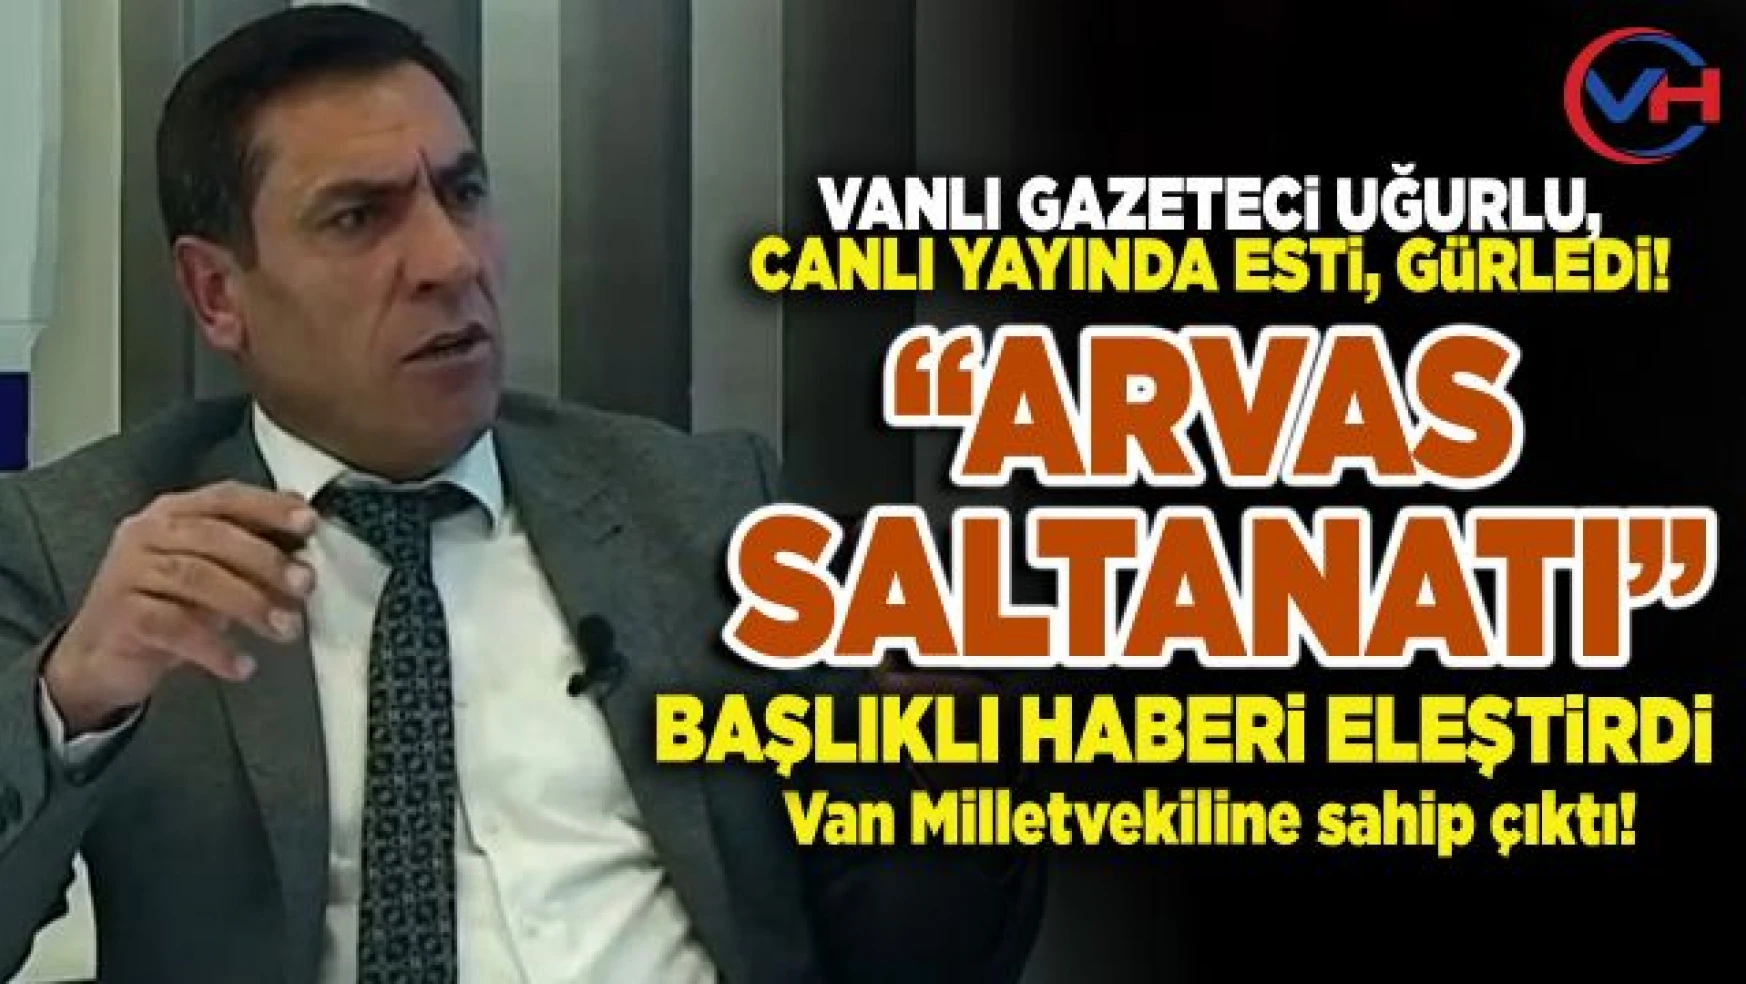 Vanlı Gazeteci Uğurlu'dan, 'Arvas Saltanatı' başlıklı habere sert tepki!